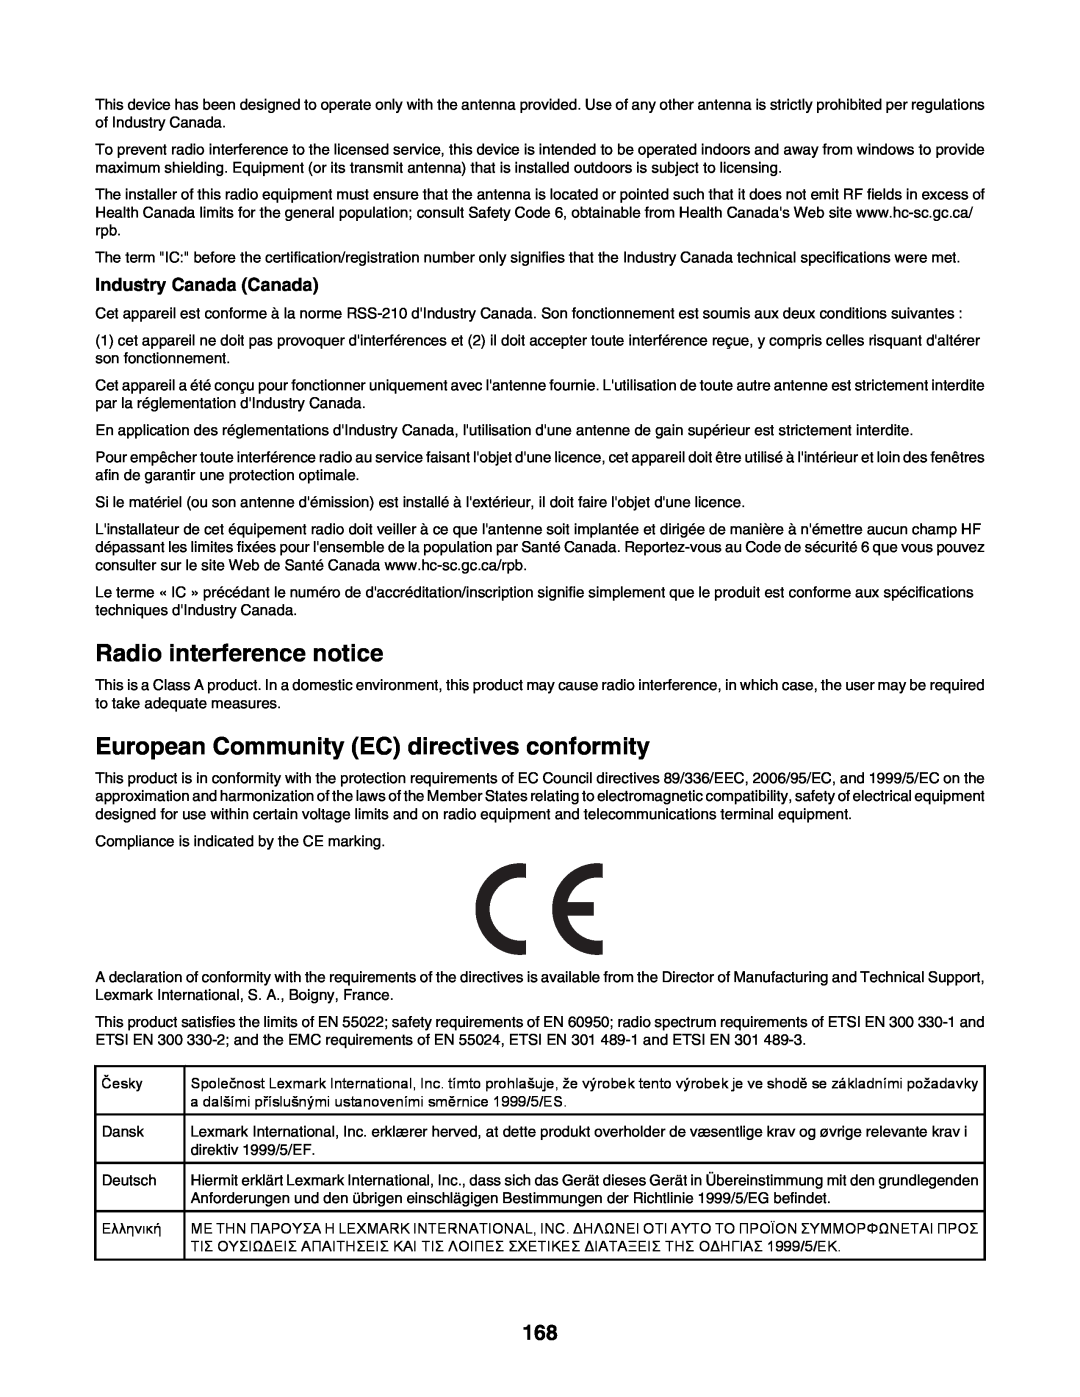 Lexmark C935 manual Radio interference notice, European Community EC directives conformity, Industry Canada Canada 